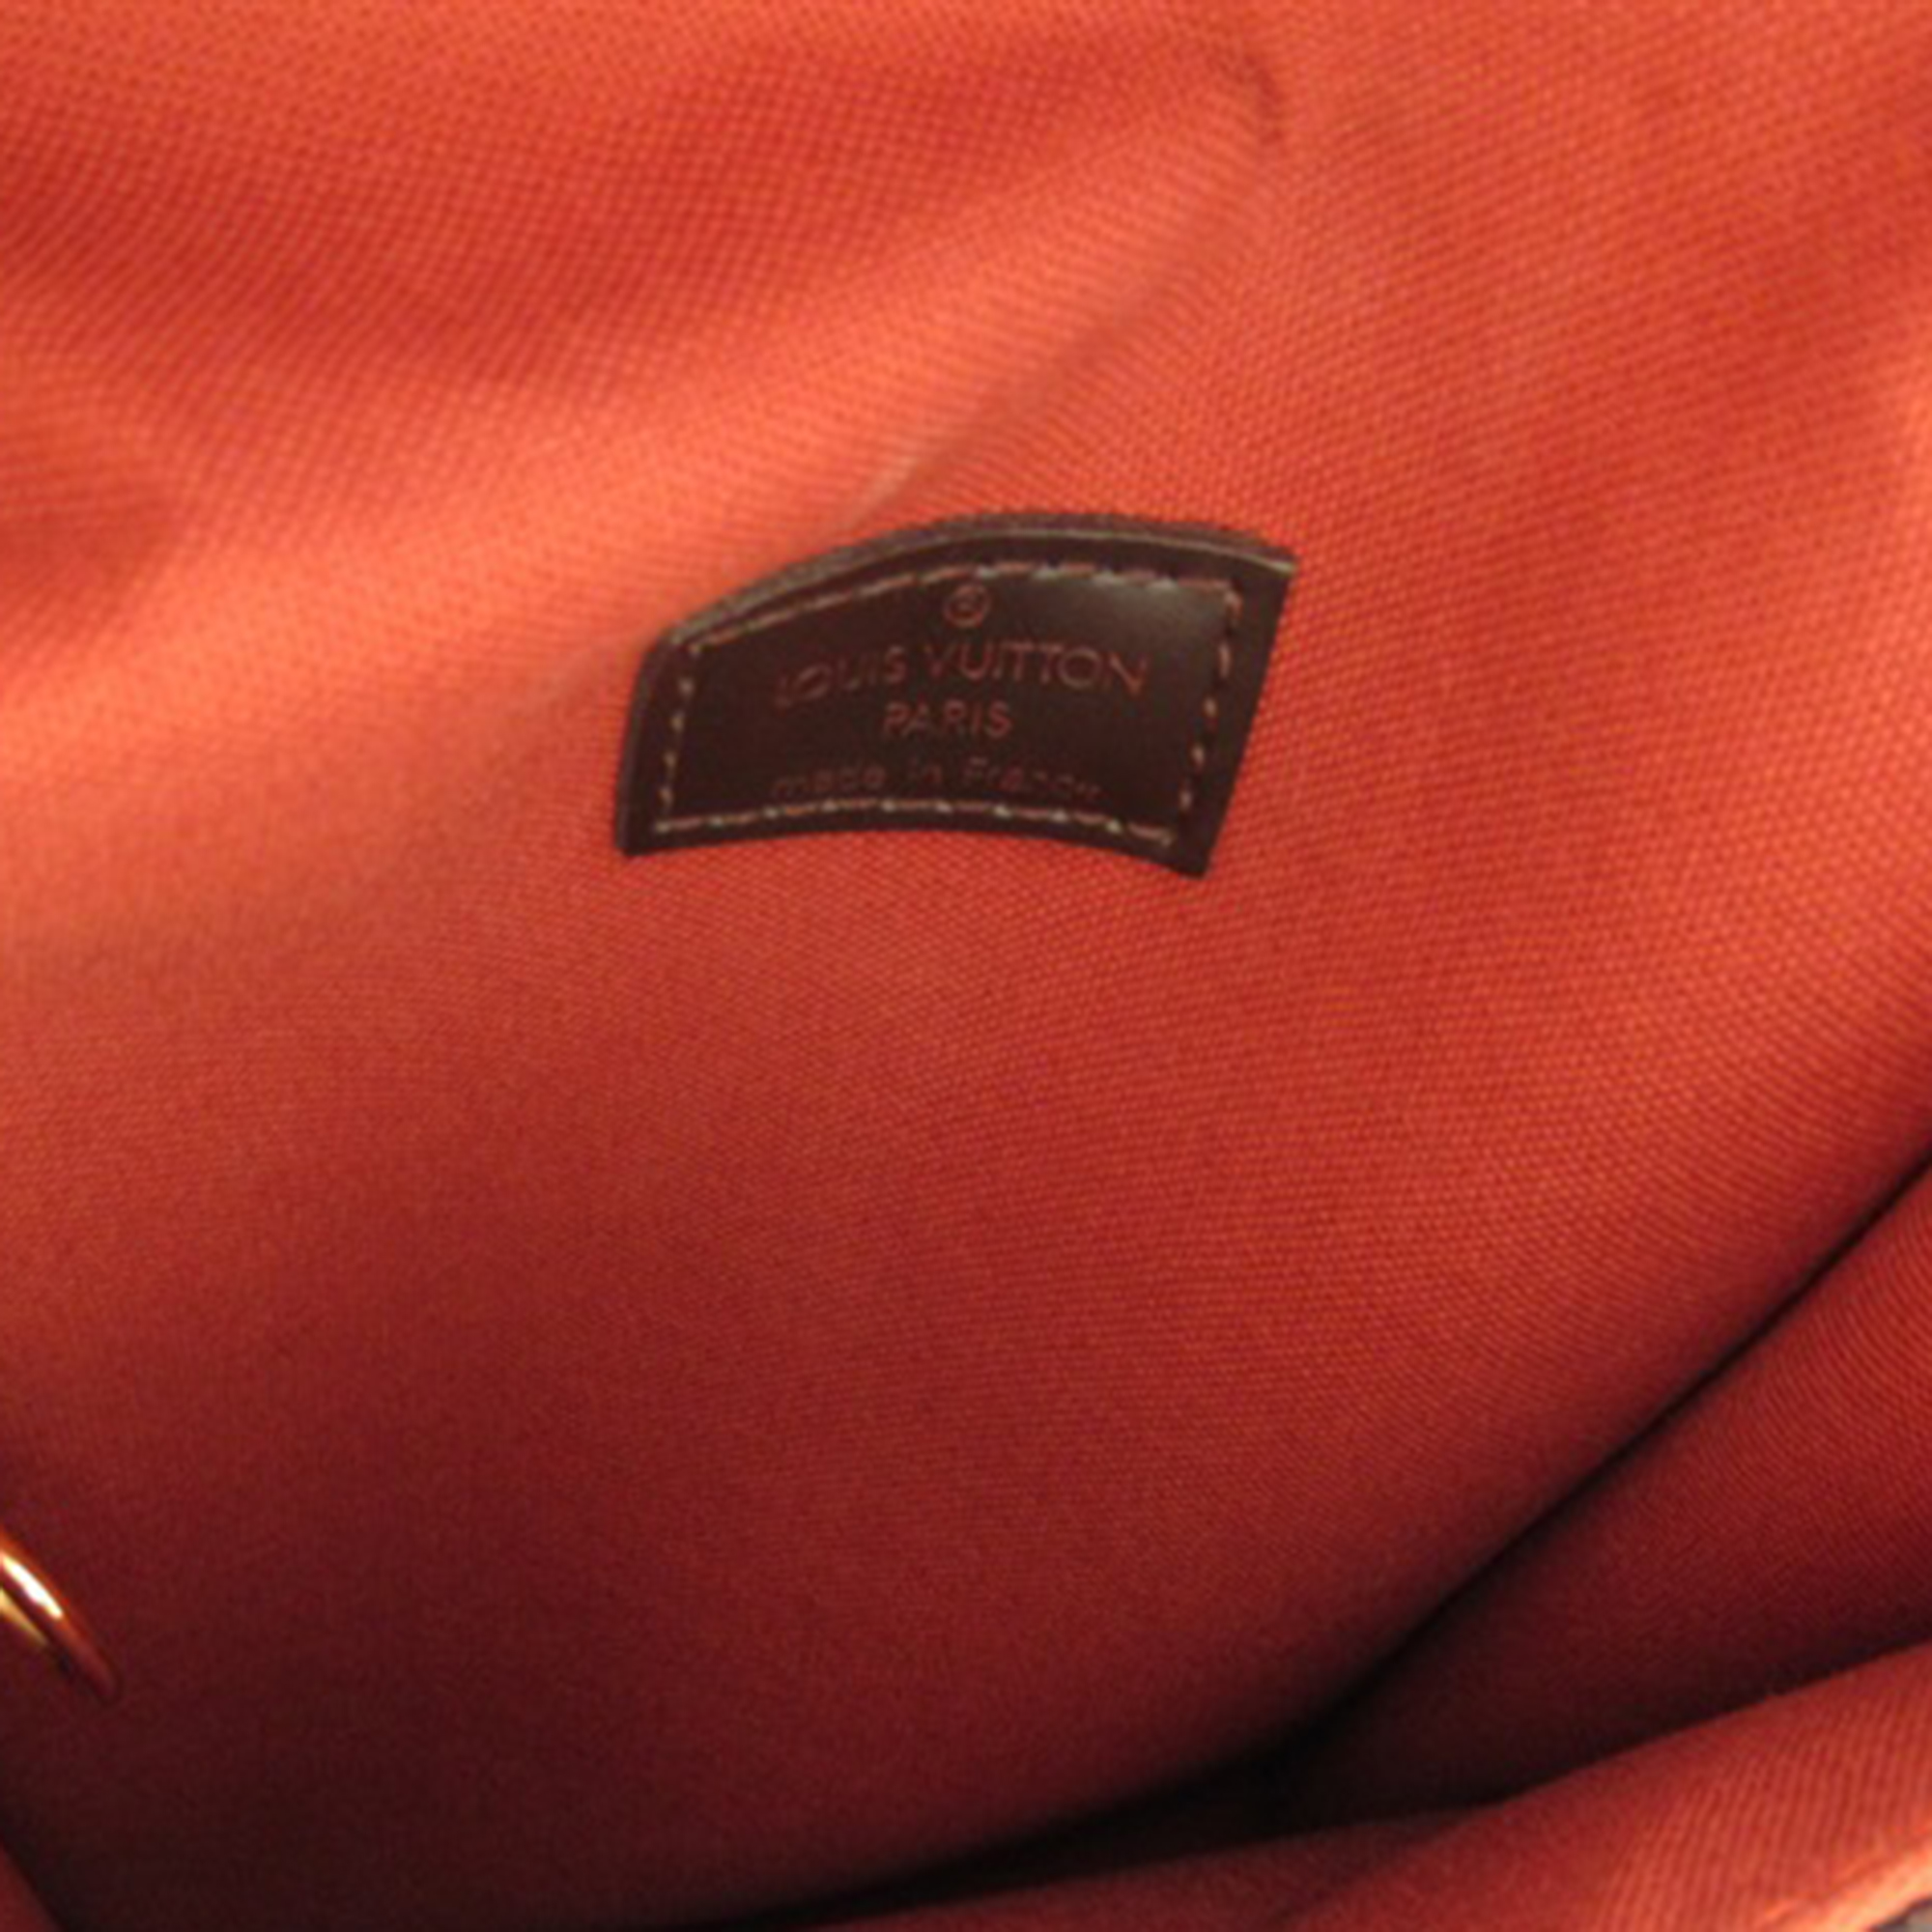 Louis Vuitton Brown Damier Ebene Canvas Portobello Shoulder Bag